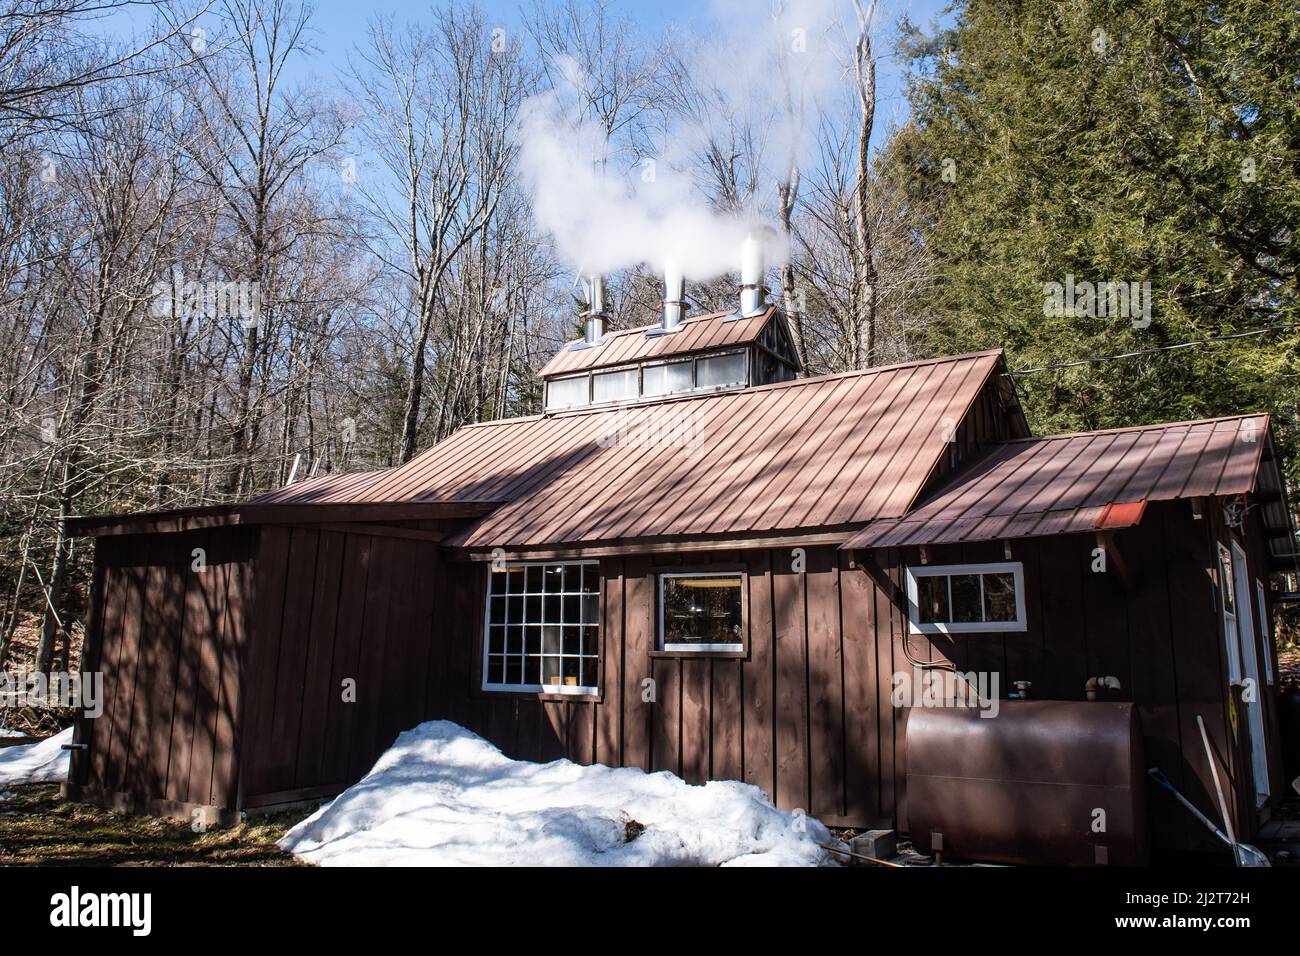 Un bâtiment de fabrication de sucre à sirop d'érable avec de la vapeur s'élevant de la cheminée dans les montagnes Adirondack, NY États-Unis Banque D'Images